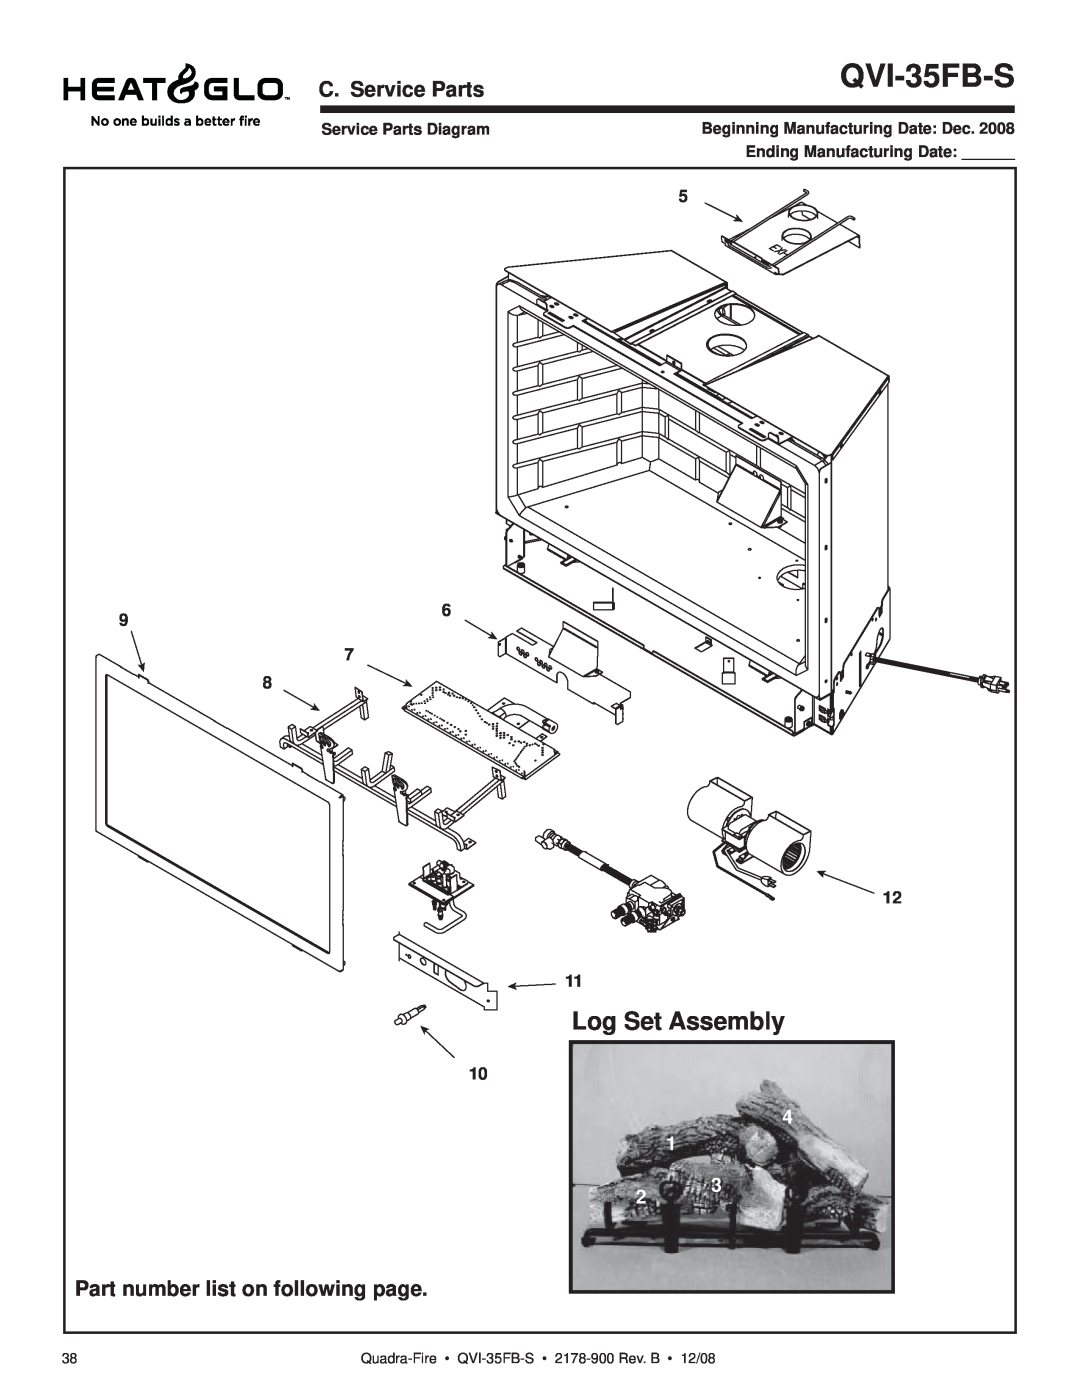 Quadra-Fire QVI-35FB-S Log Set Assembly, C. Service Parts, Part number list on following page, Service Parts Diagram 